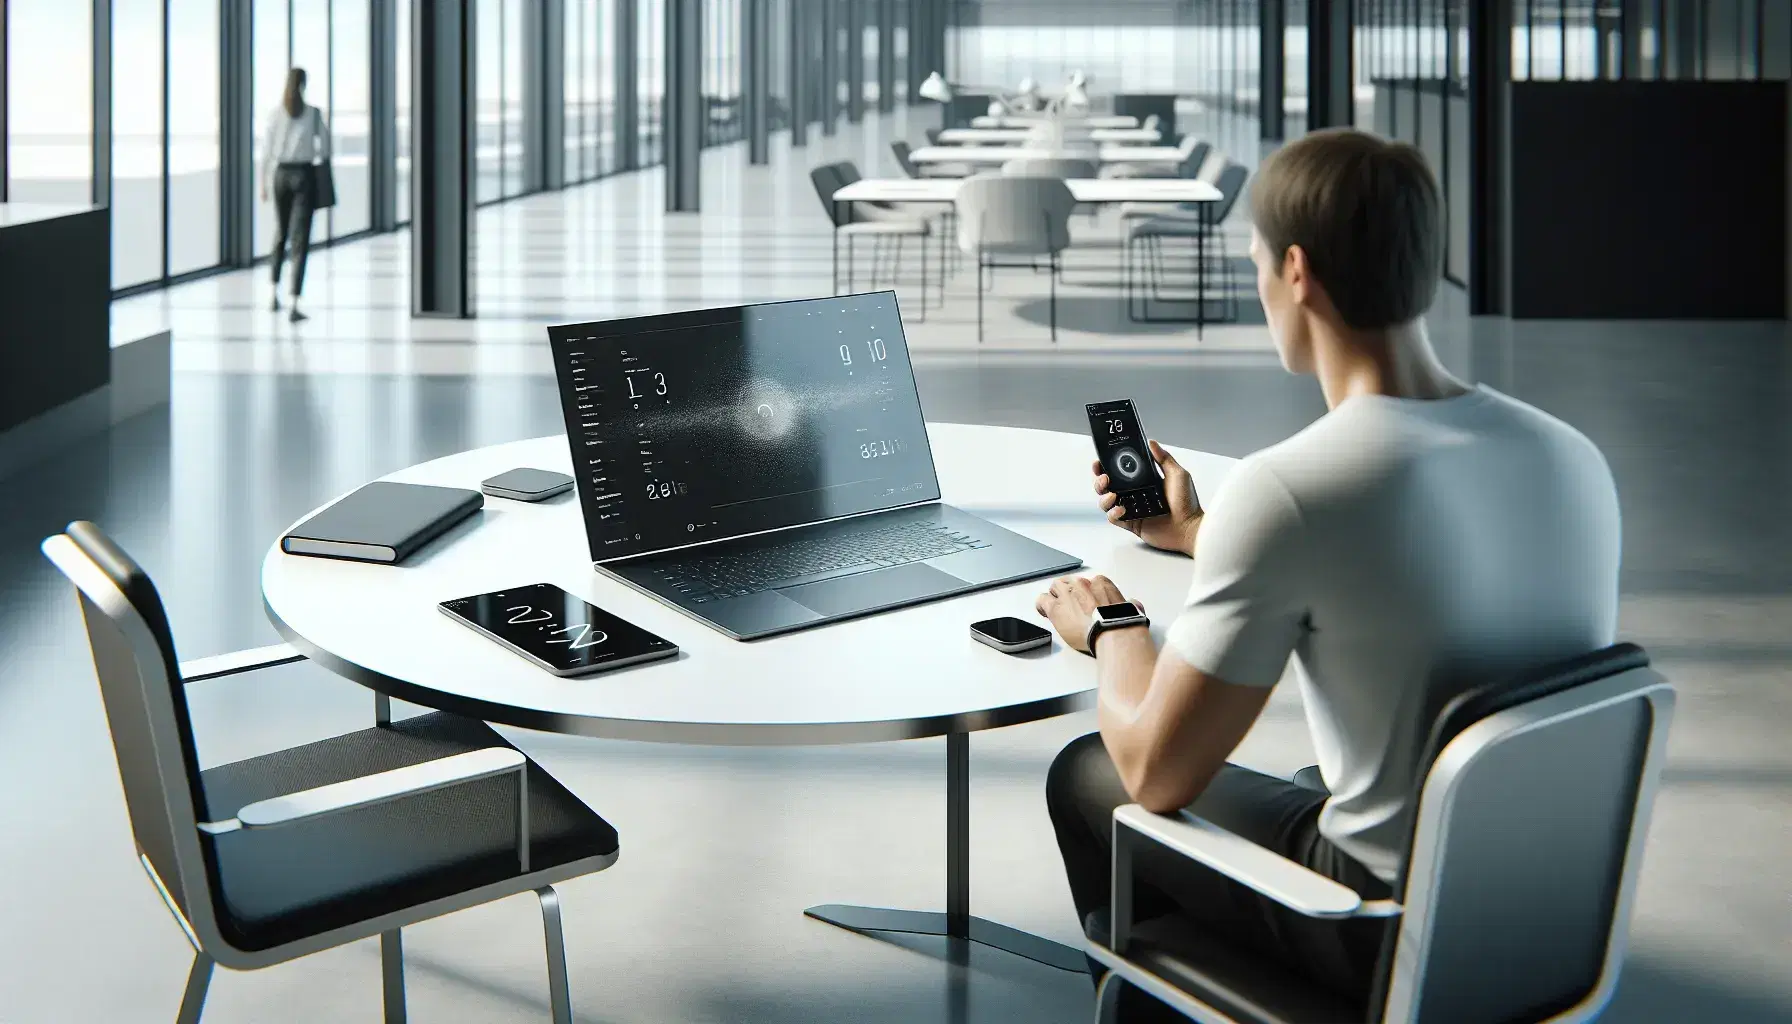 Oficina moderna con mesa redonda blanca y silla ergonómica, laptop abierto y smartphone en la mesa, y persona sentada trabajando con sensor portátil.